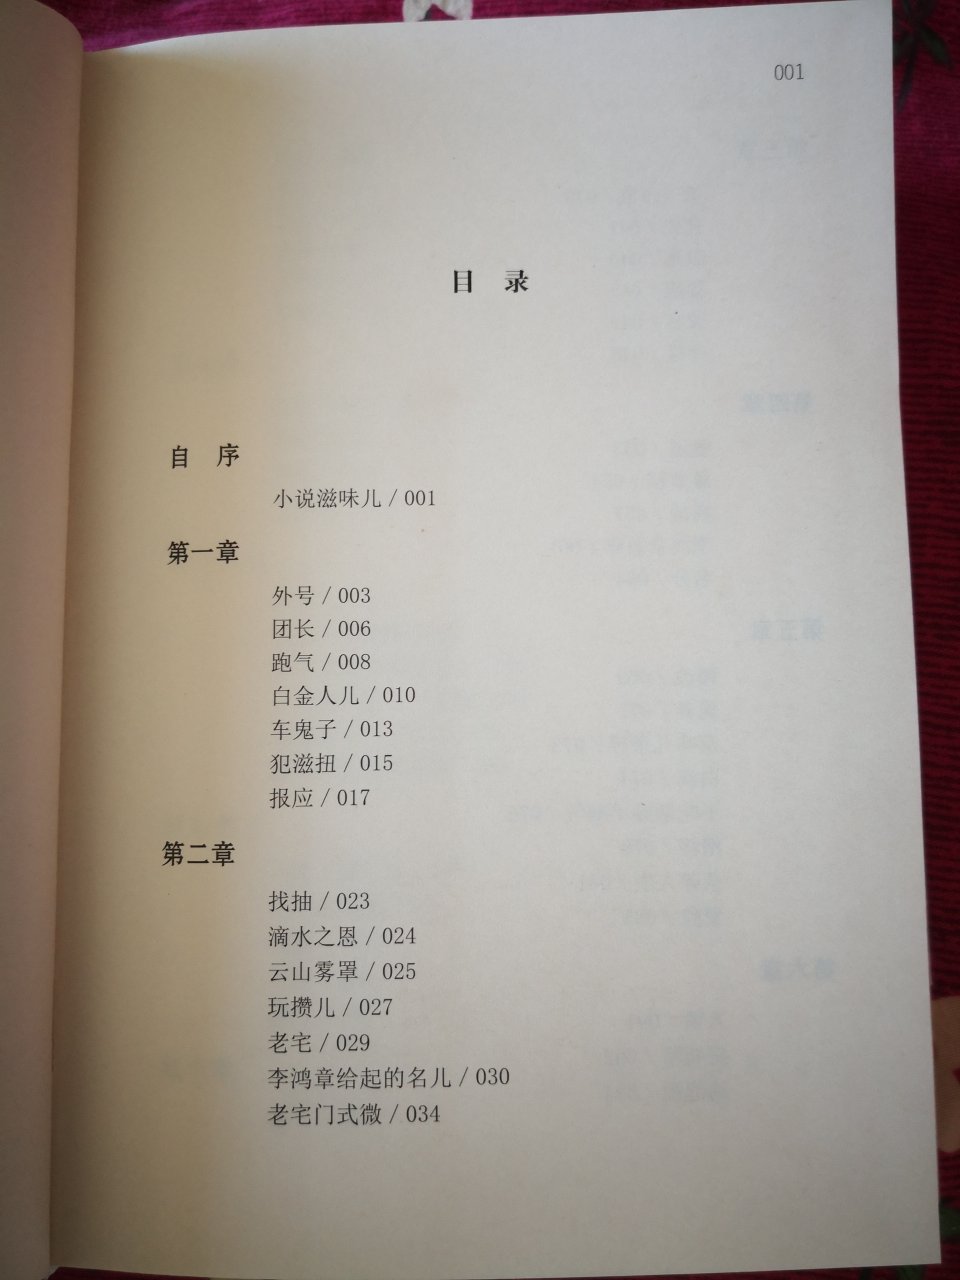 喜欢刘一达的小说，京味儿十足，勾起了许多儿时的回忆。